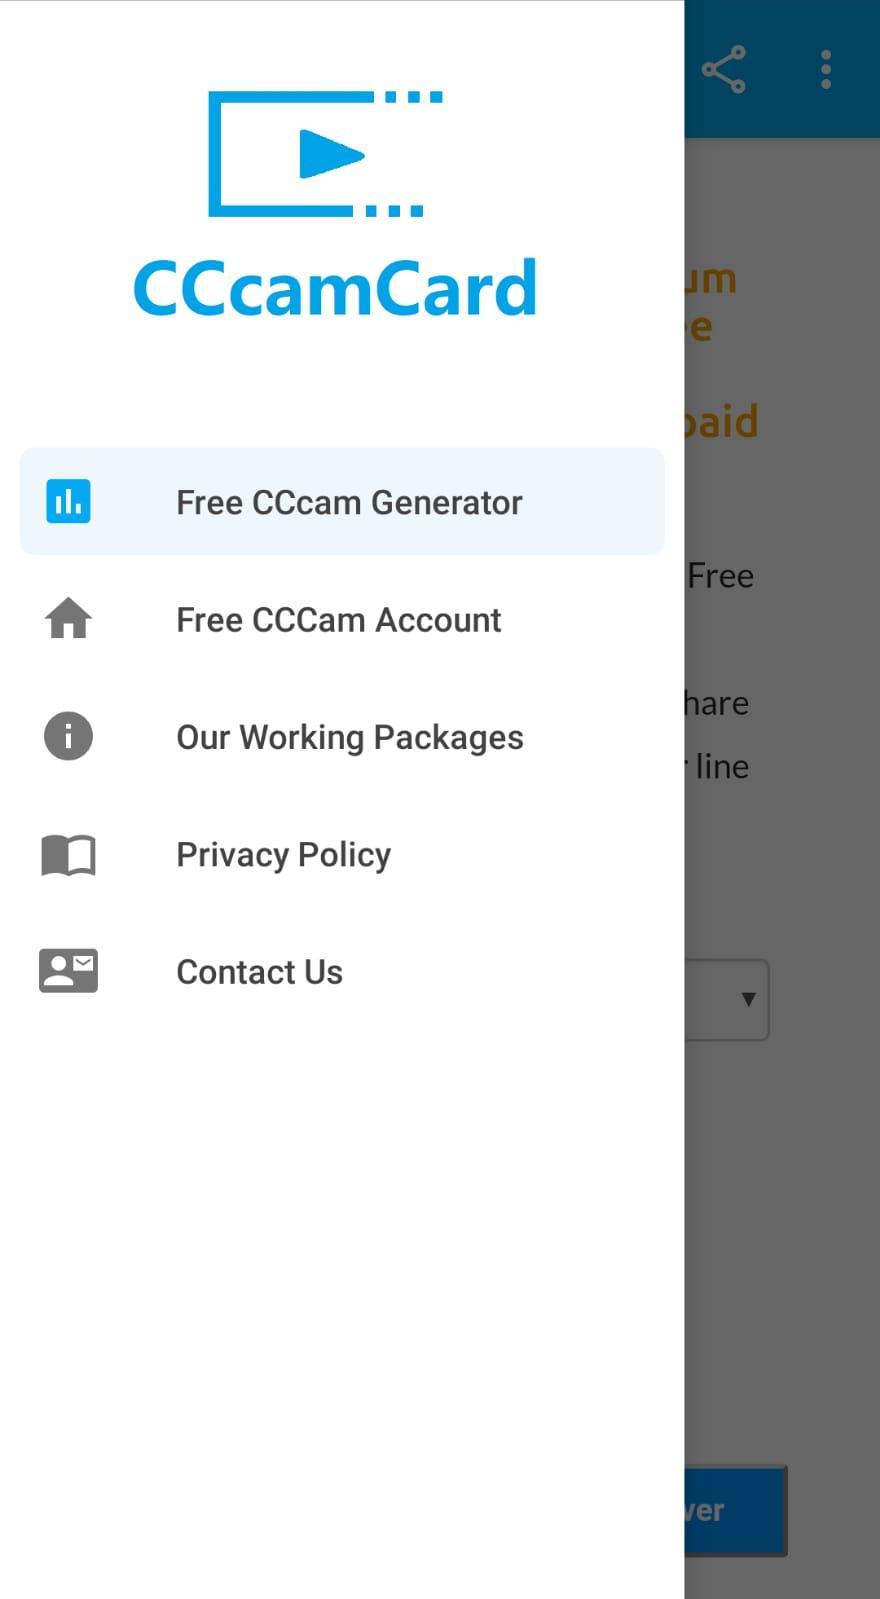 CCcamCard.com - Free CCcam Server Generator App for Android - APK Download